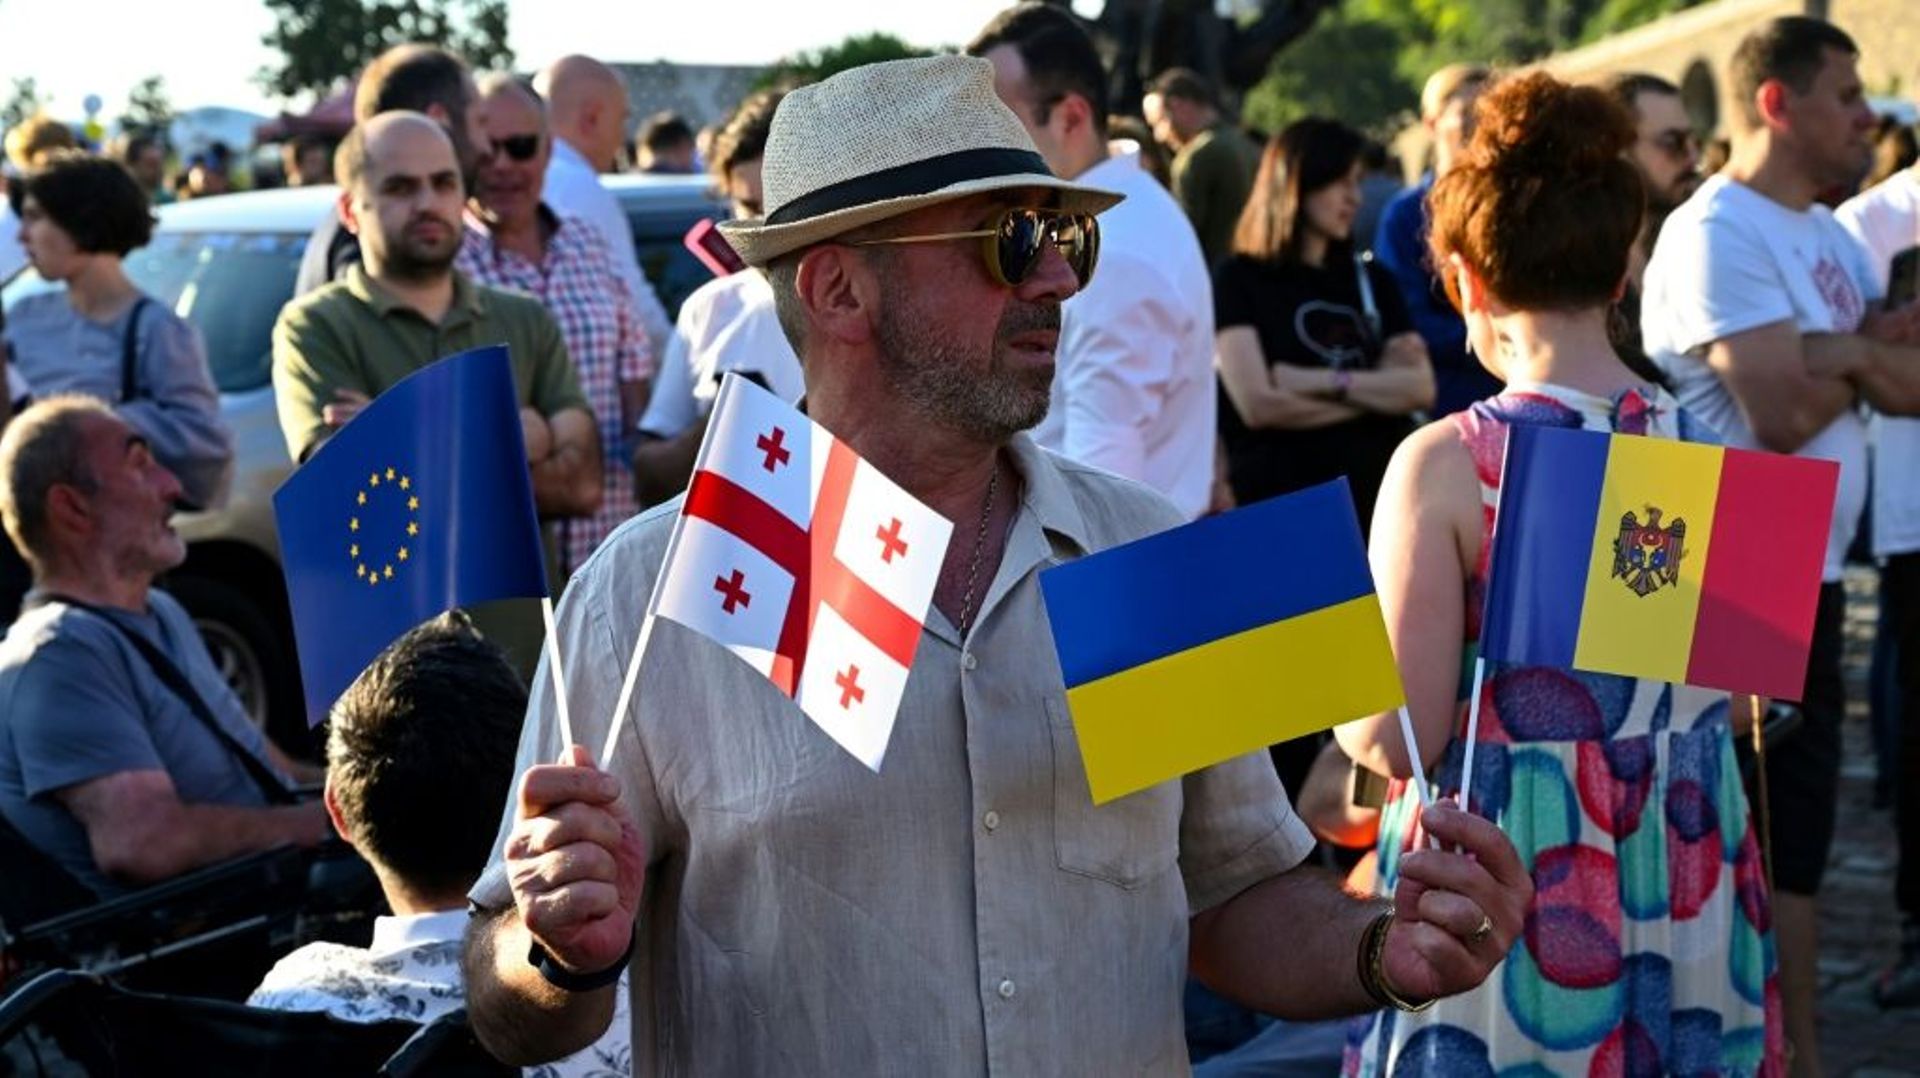 Un homme brandit des drapeaux de l’Union européenne et de l’Ukraine, entre autres, en Géorgie, à Tbilissi le 16 juin 2022